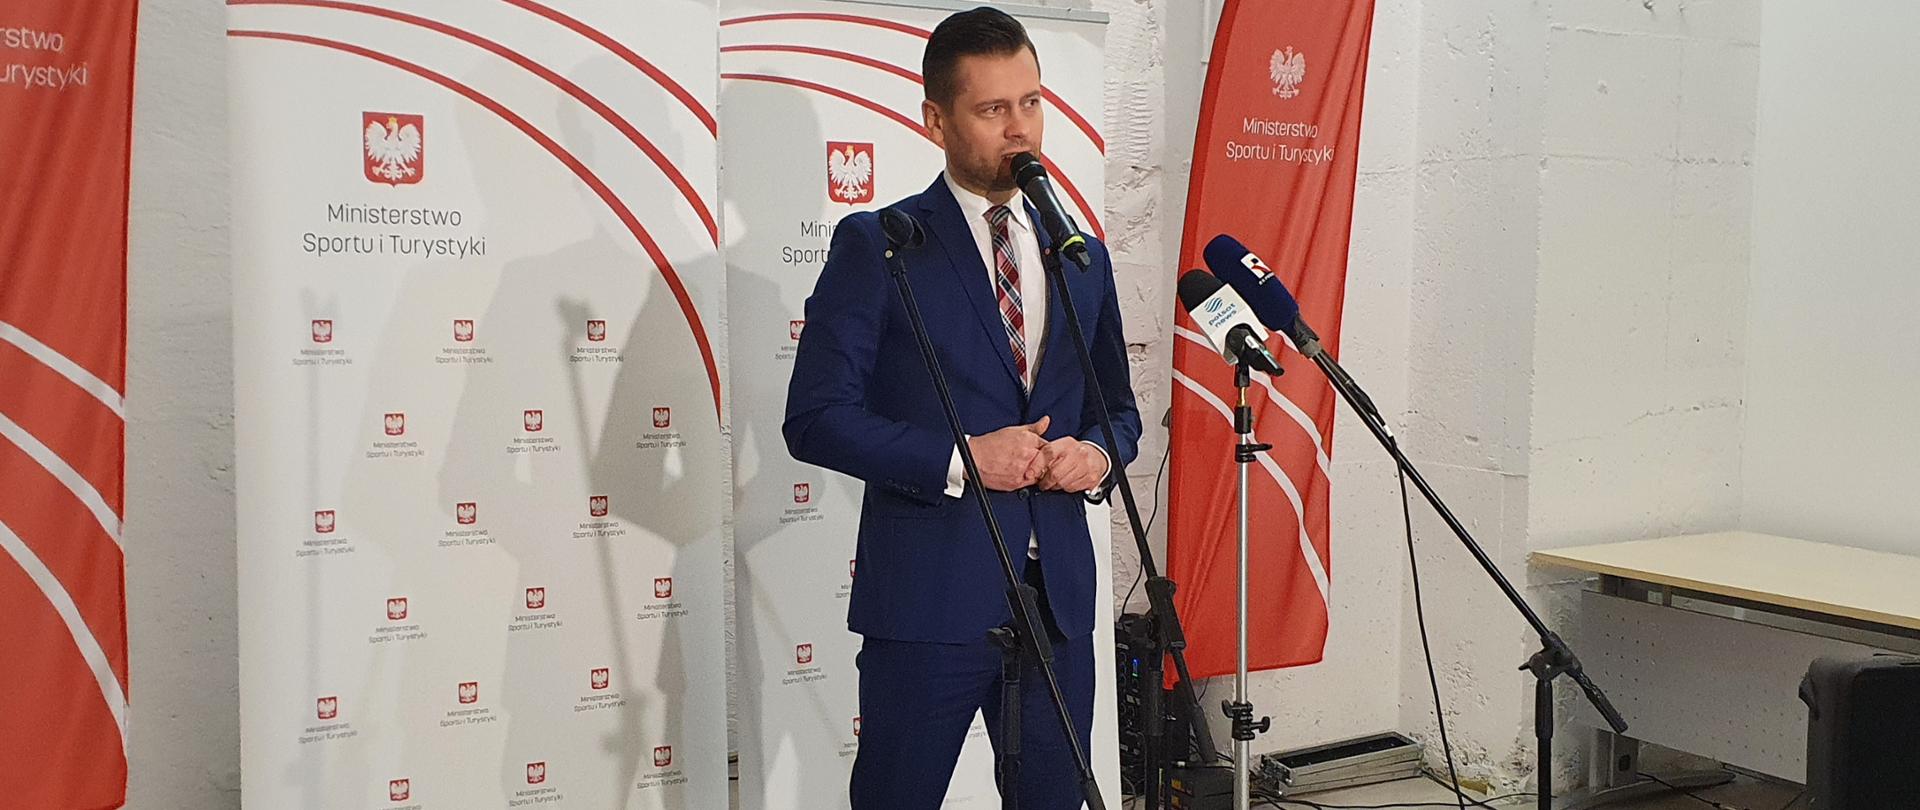 Minister Kamil Bortniczuk zapowiedział nowy program upowszechniania strzelectwa w Polsce. Na zdjęciu minister przemawia do mikrofonu, w tle ścianka z logotypami Ministerstwa Sportu i Turystyki.